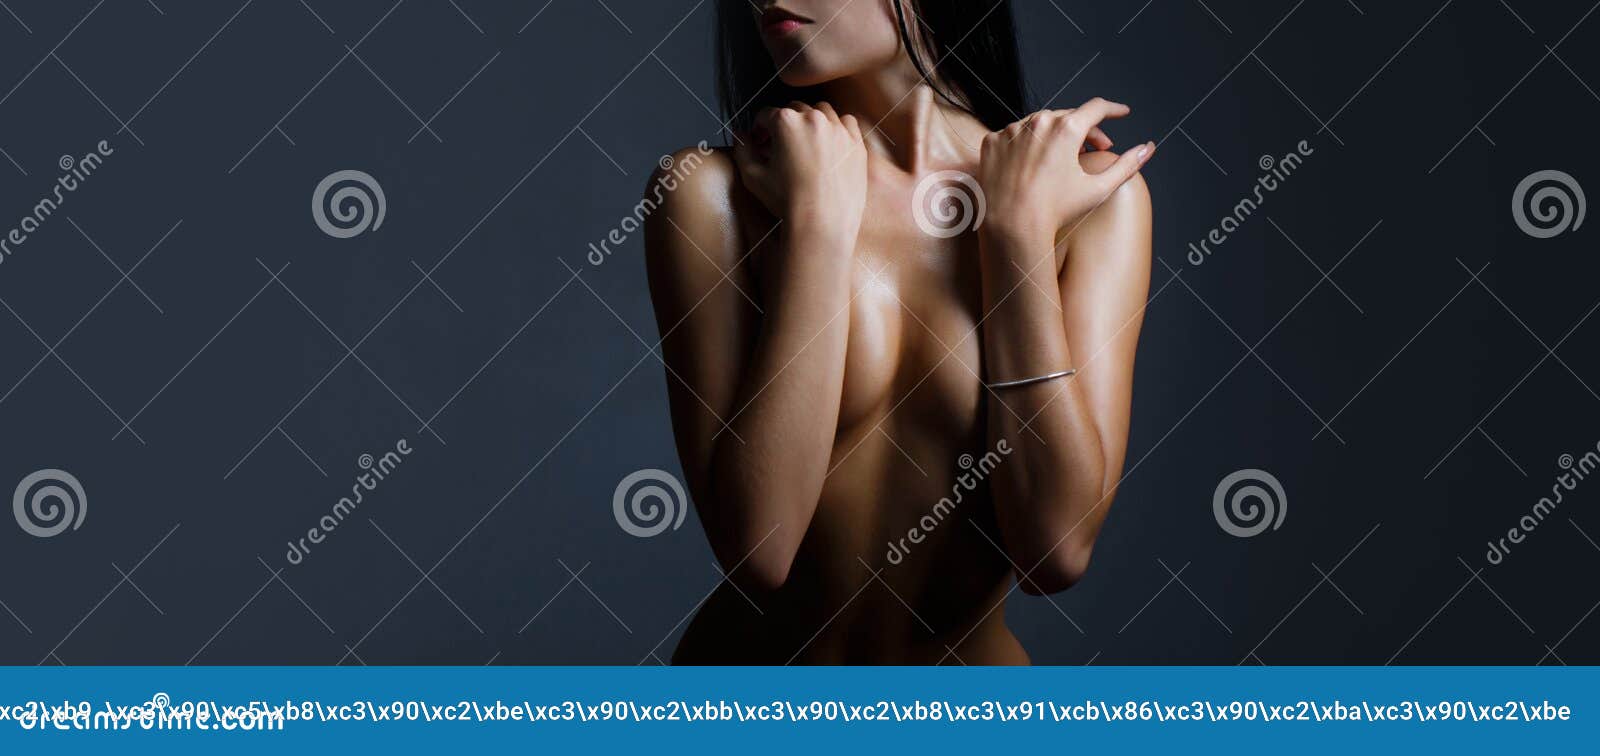 Beautiful boobs tits breasts